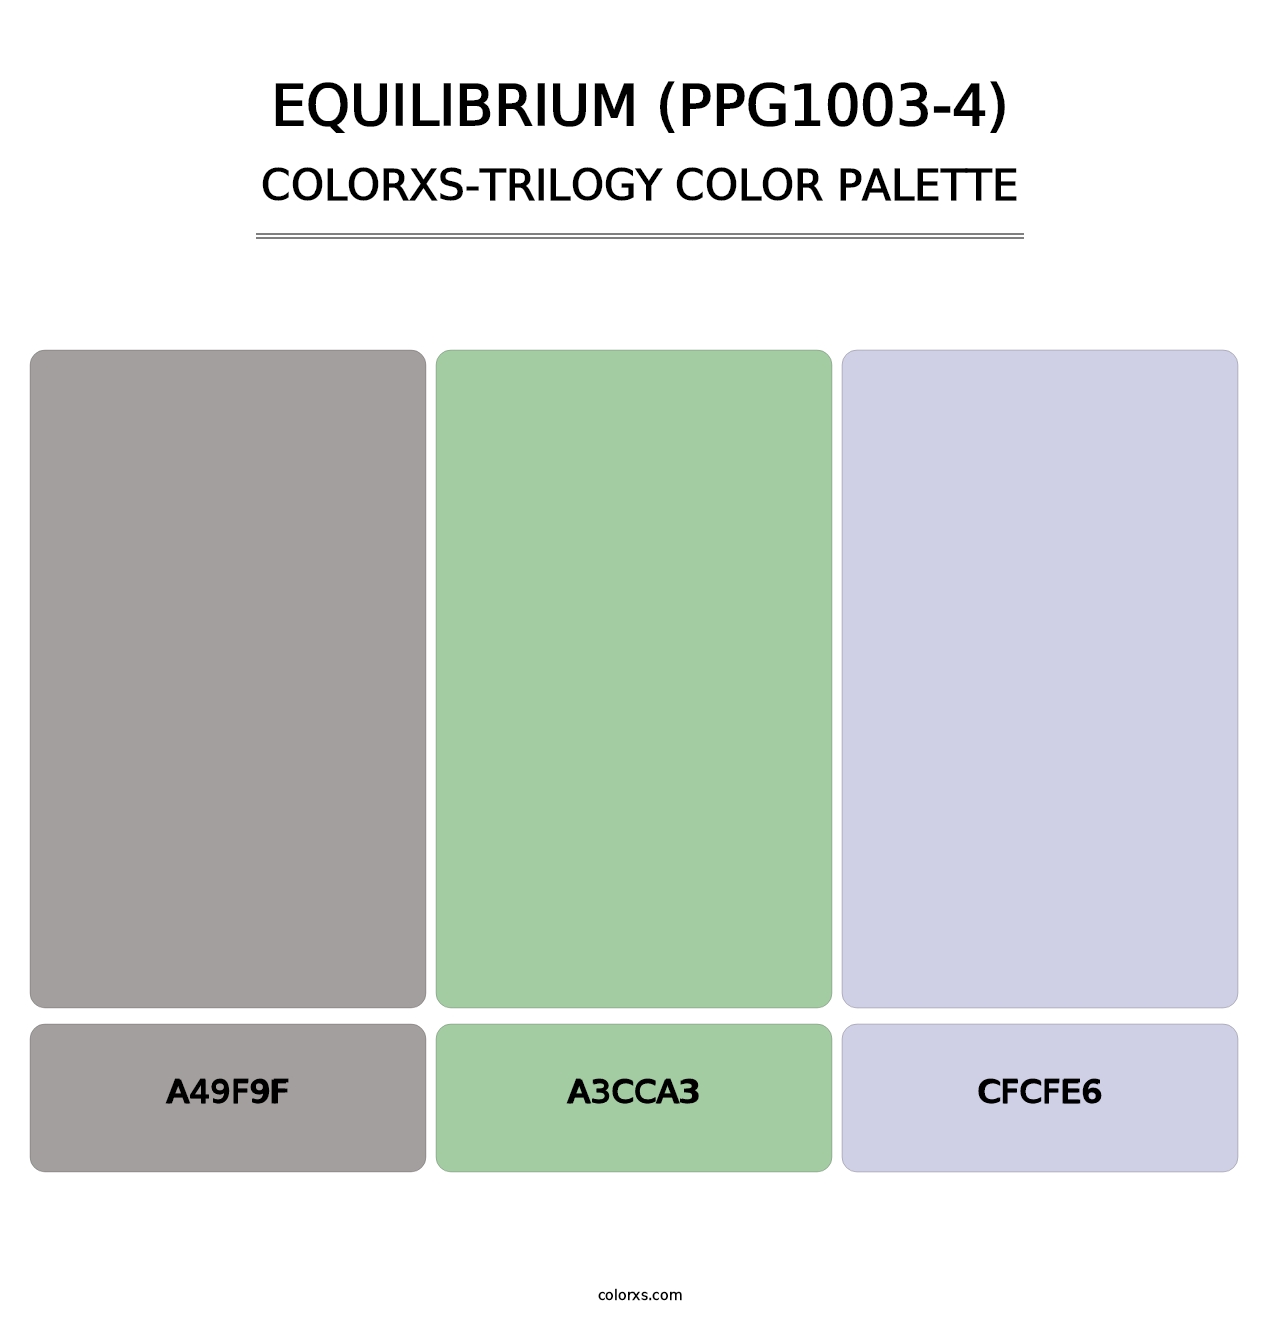 Equilibrium (PPG1003-4) - Colorxs Trilogy Palette